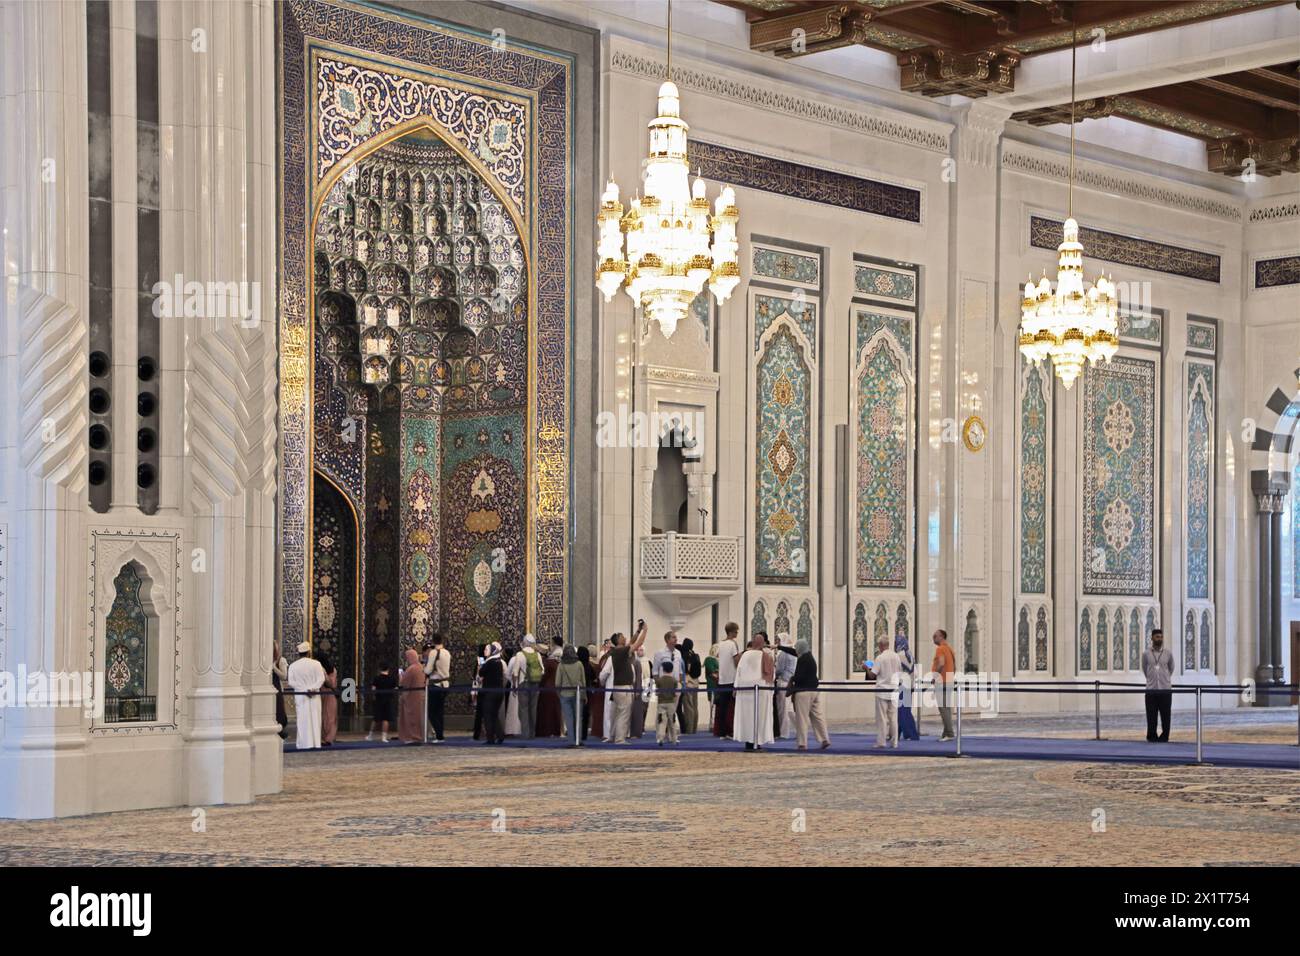 Sultan Qaboos Grand Mosquée touristes intérieurs debout sur le tapis bleu protecteur par le mihrab Muscat Oman Banque D'Images